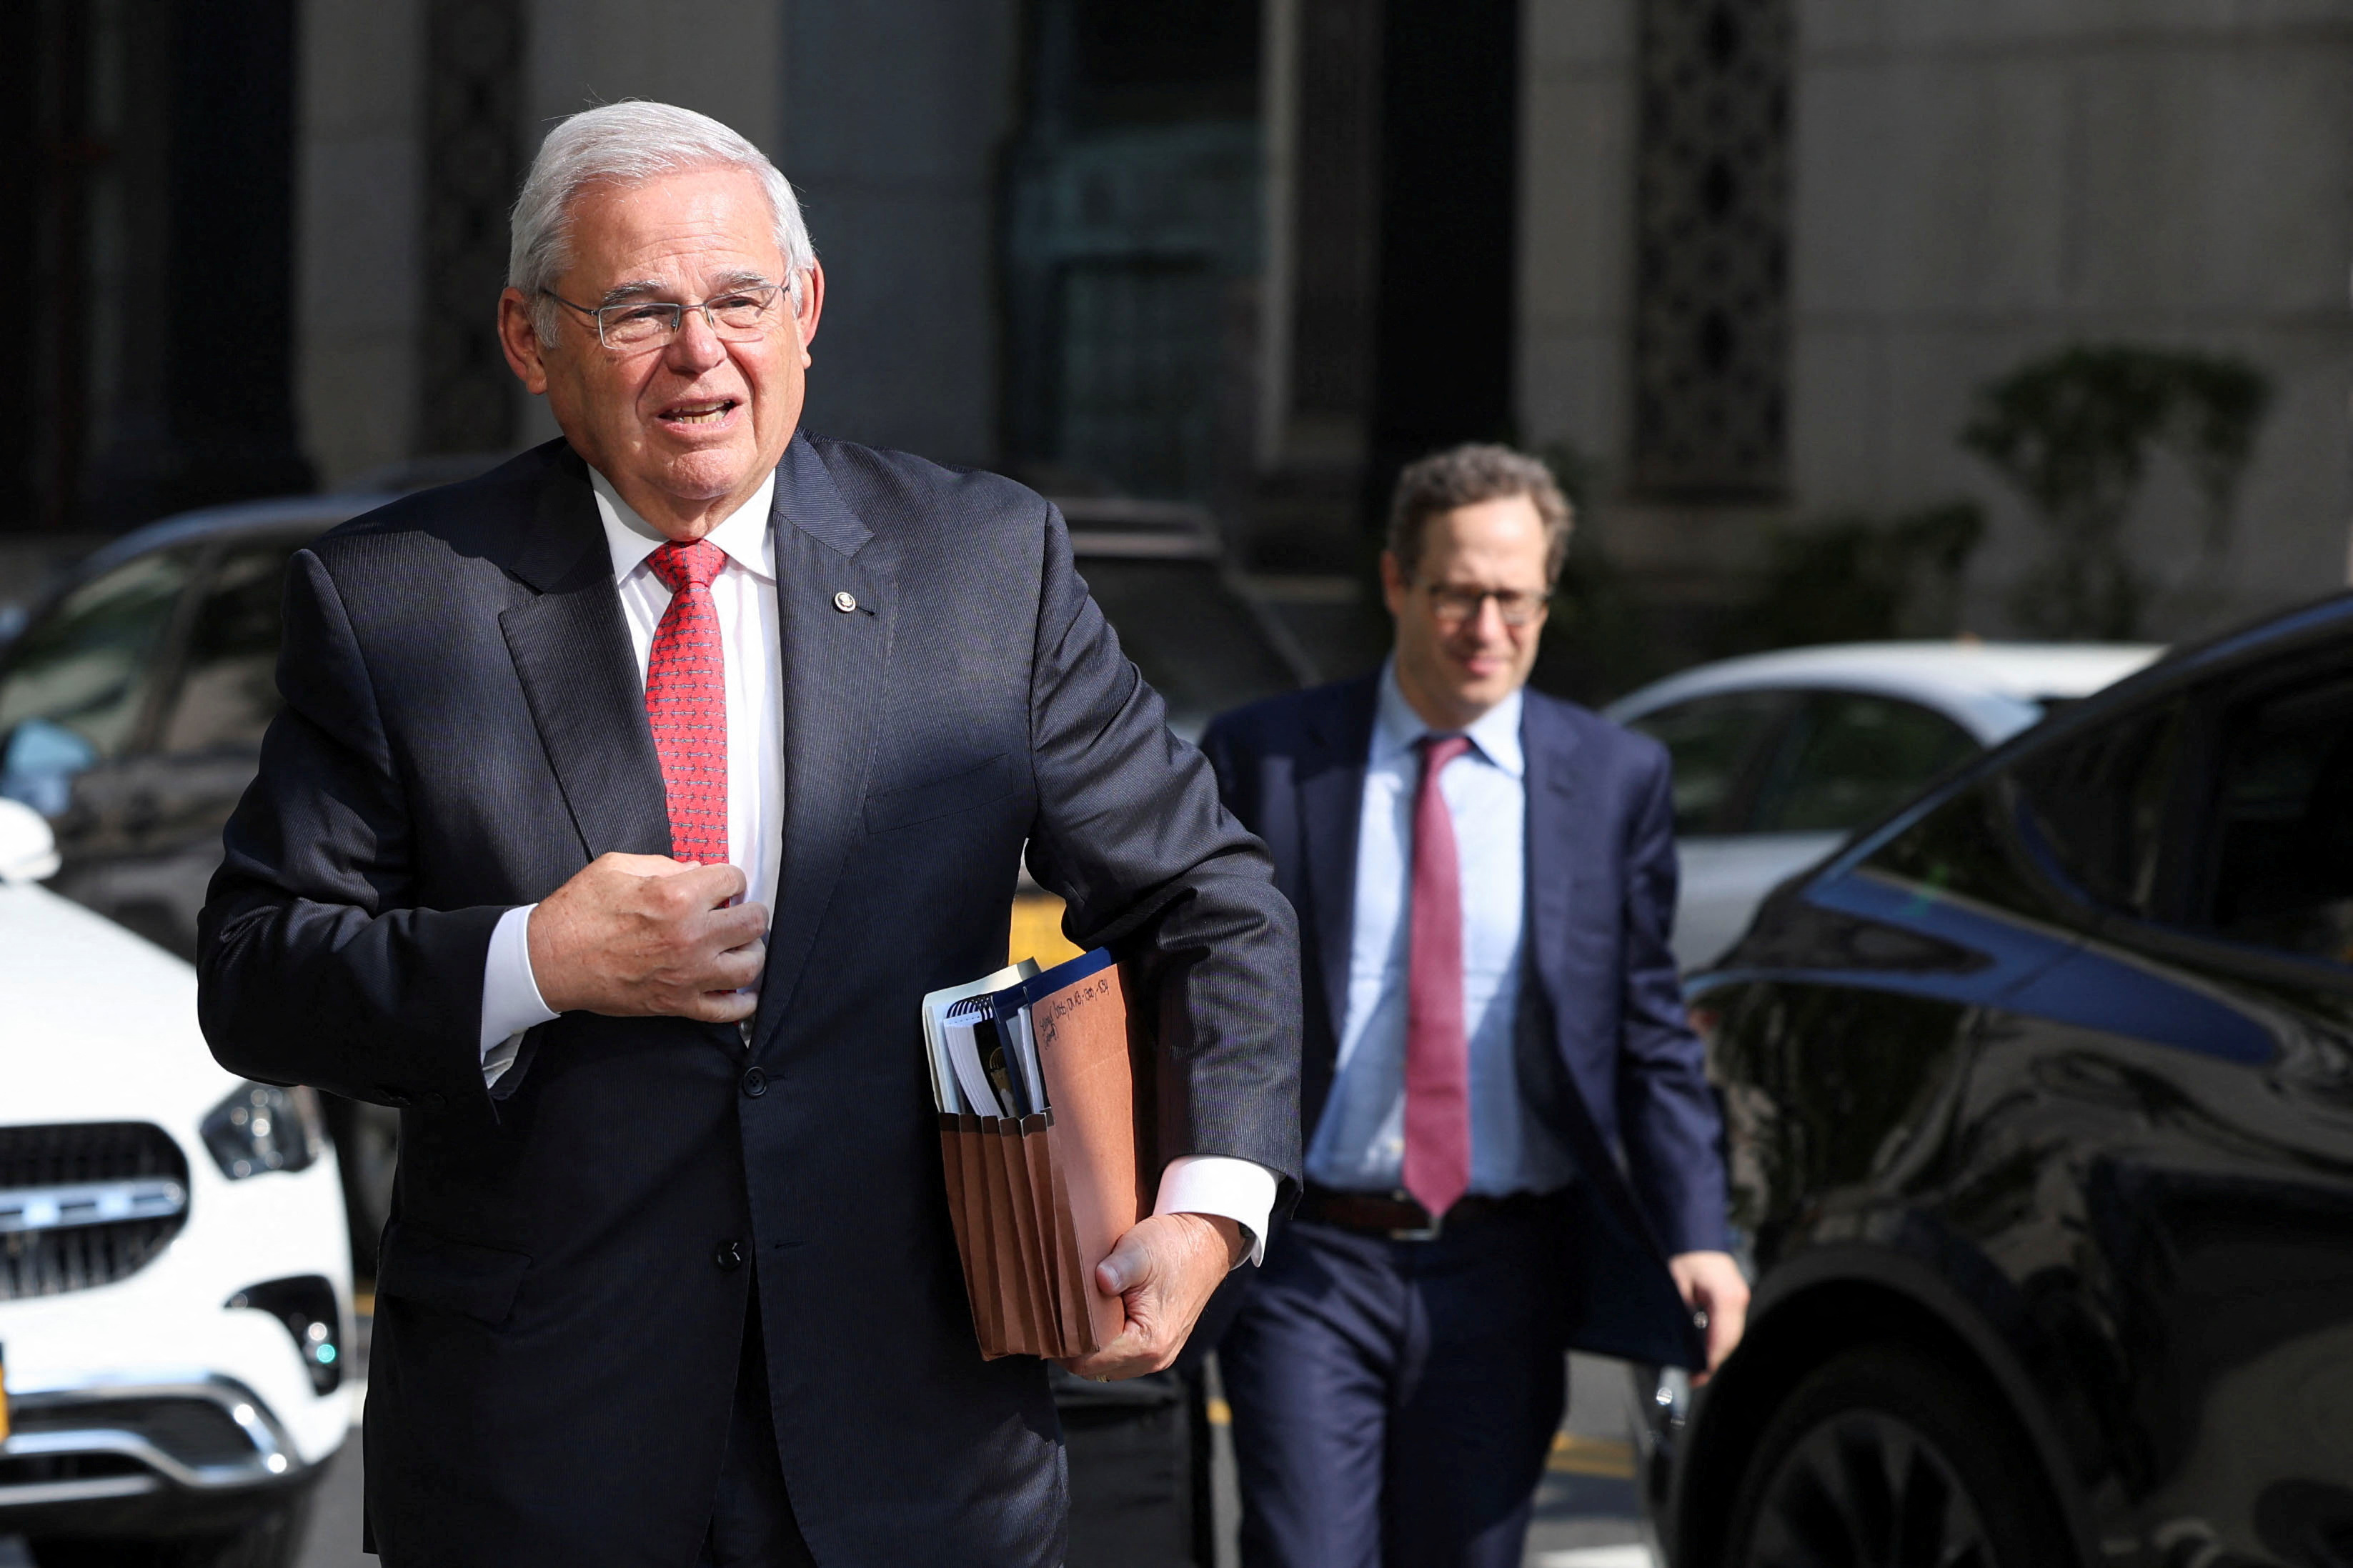 U.S. Senator Robert Menendez arrives at Federal Court, for his bribery trial in New York